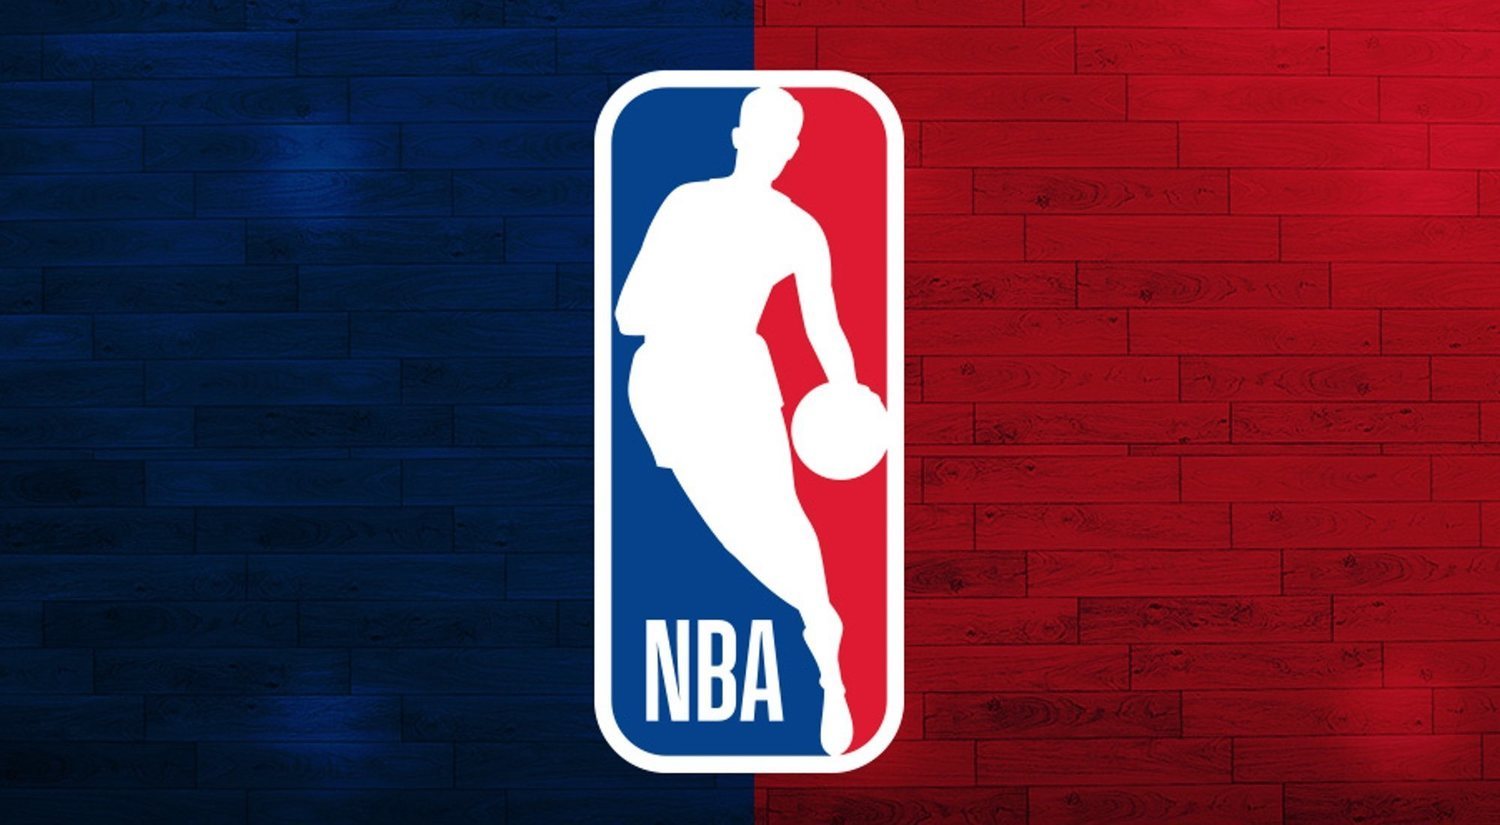 Agencia libre de la NBA: qué es y cómo funciona